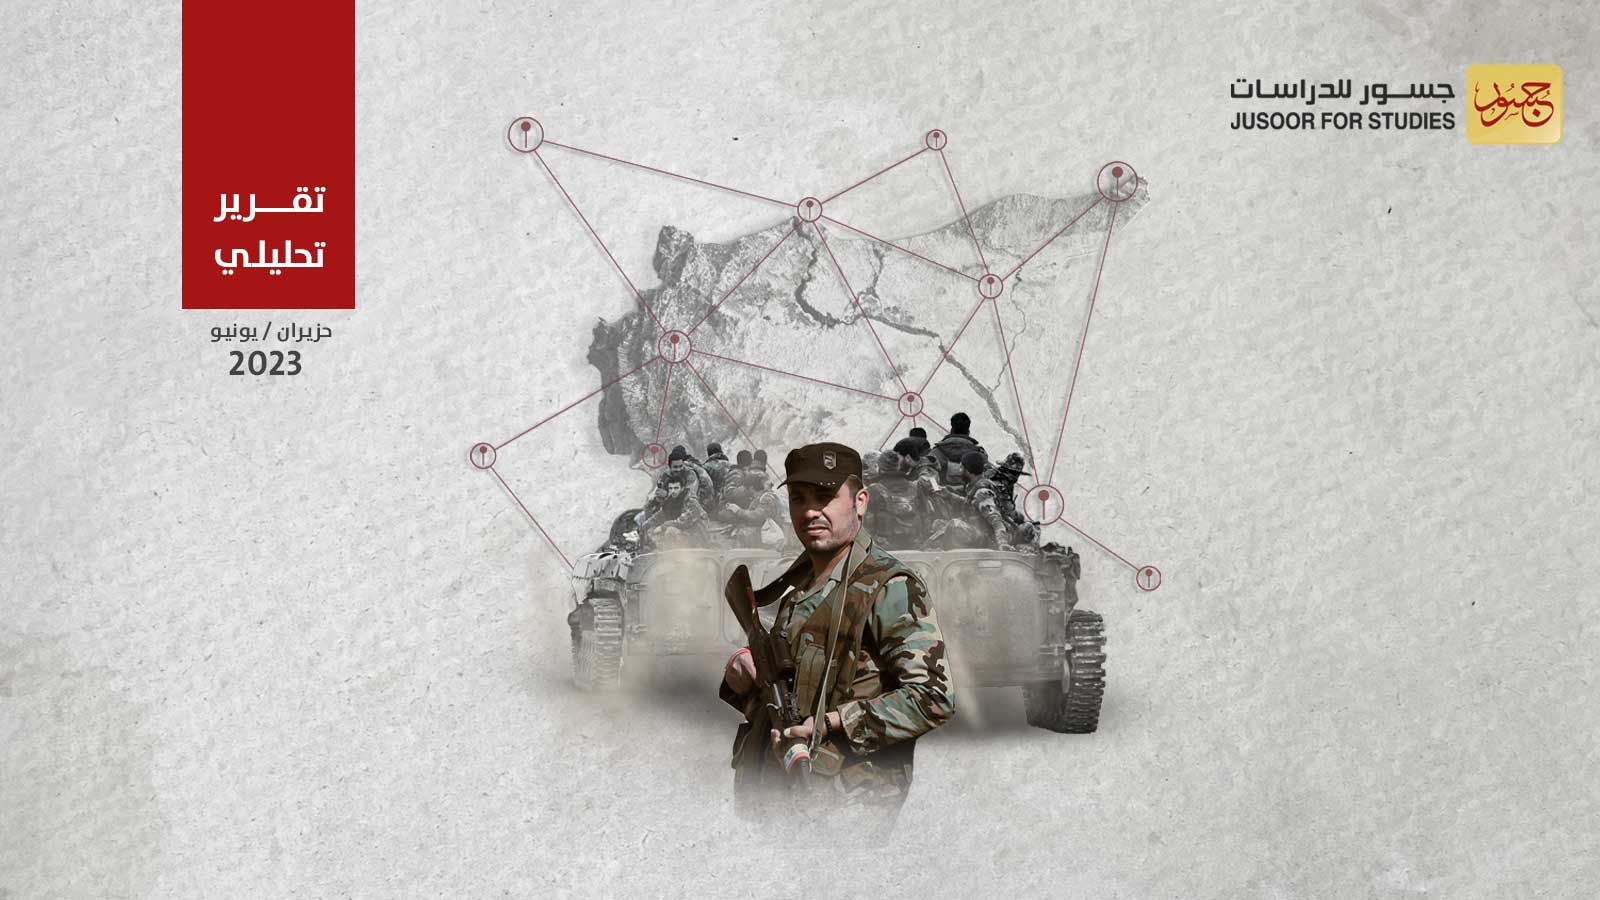 انتشار وثقل الفيالق العسكرية الجديدة في قوات النظام السوري